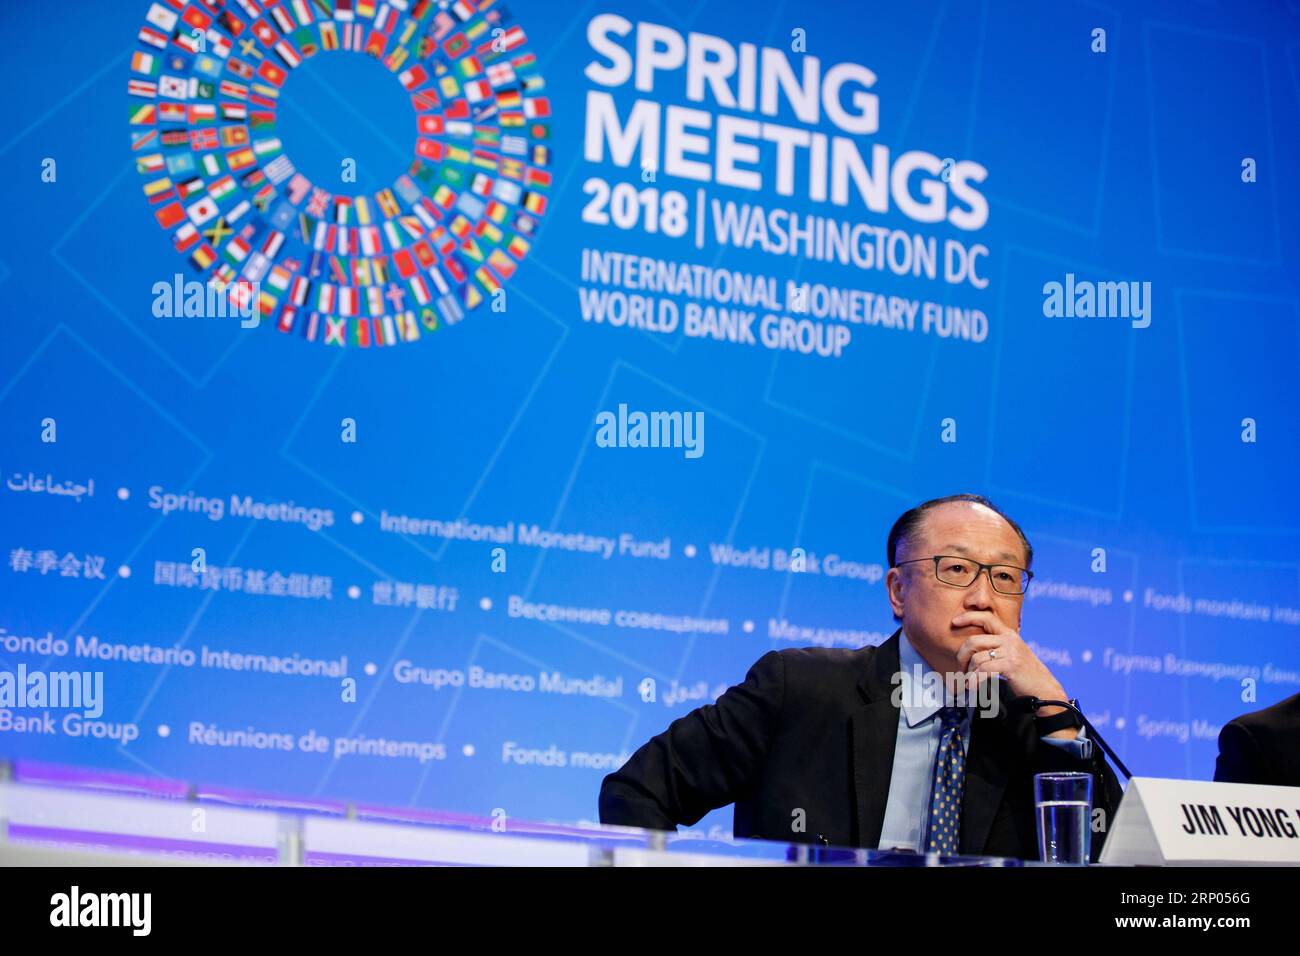 (180419) -- WASHINGTON, le 19 avril 2018 -- le président de la Banque mondiale, Jim Yong Kim, assiste à une conférence de presse lors des réunions de printemps du Fonds monétaire international et de la Banque mondiale à Washington D.C., aux États-Unis, le 19 avril 2018. Le président de la Banque mondiale, Jim Yong Kim, a déclaré jeudi que le prêteur multilatéral augmenterait progressivement ses prêts aux pays à revenu intermédiaire de la tranche inférieure. ÉTATS-UNIS-WASHINGTON D.C.-FMI-BANQUE MONDIALE-CONFÉRENCE DE PRESSE-JIM YONG KIM TINGXSHEN PUBLICATIONXNOTXINXCHN Banque D'Images